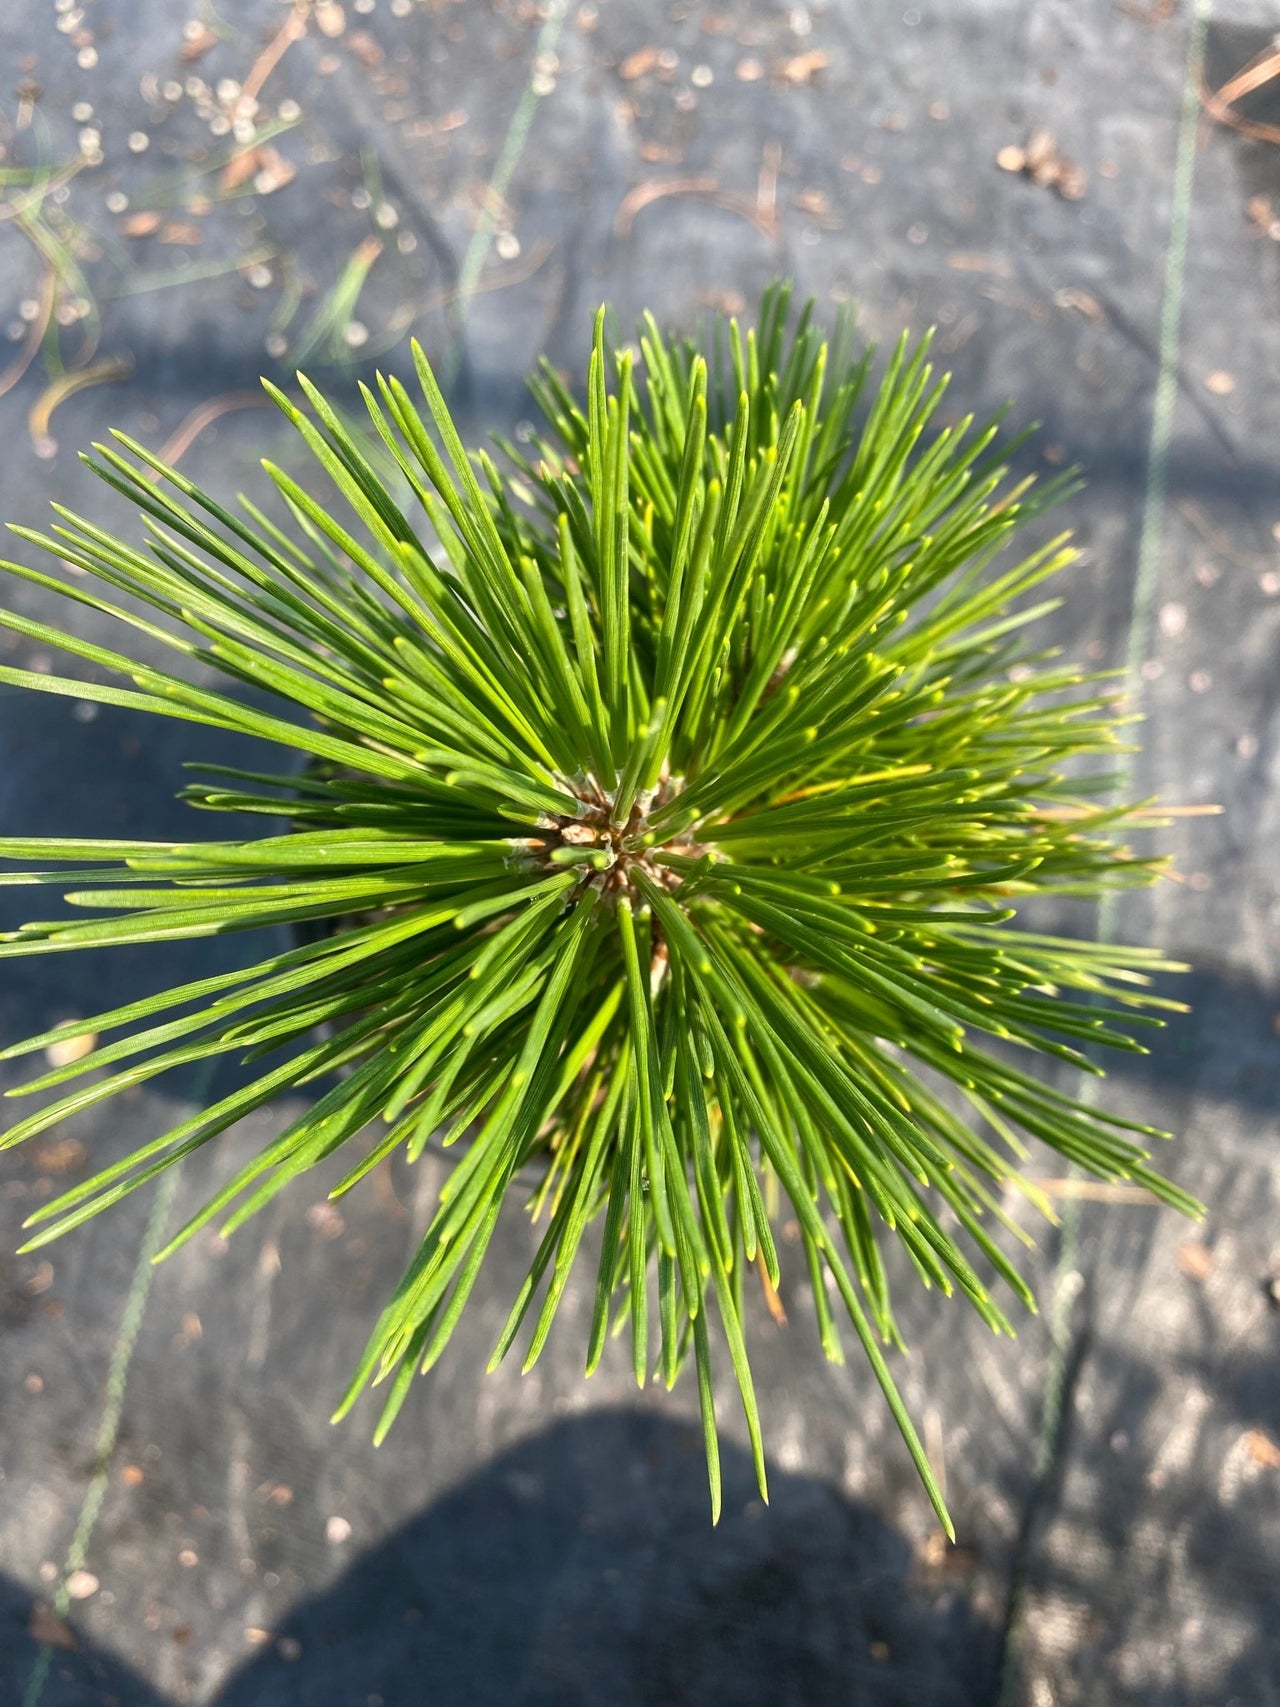 Pinus thumbergii 'Whisky Hill' - mapleridgenursery